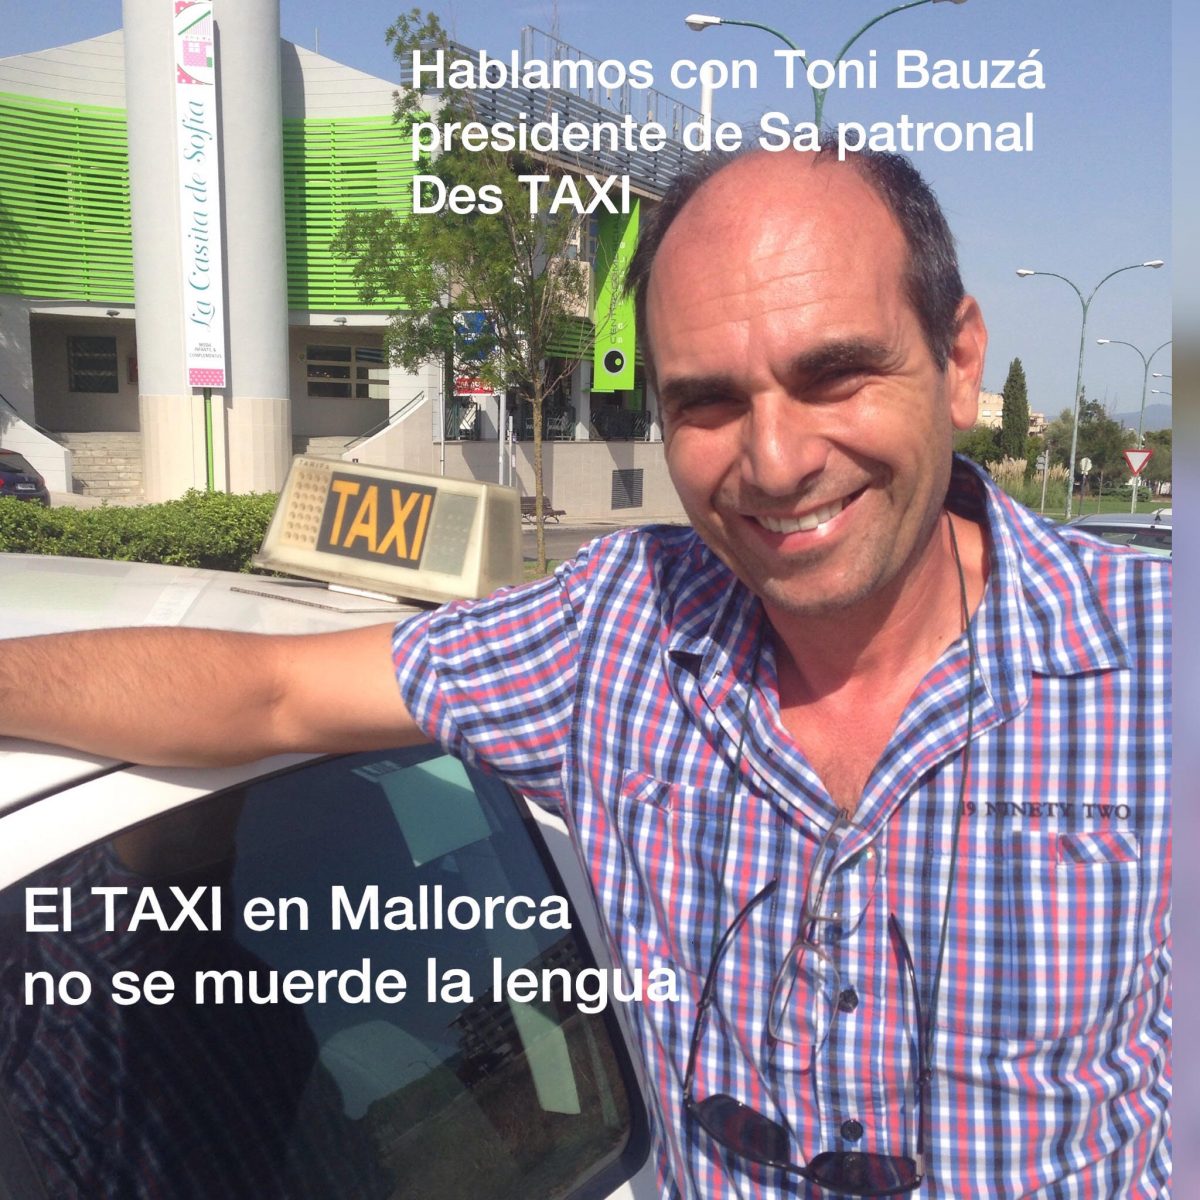 Todo lo que hay que decir del reto del Taxi en Mallorca.